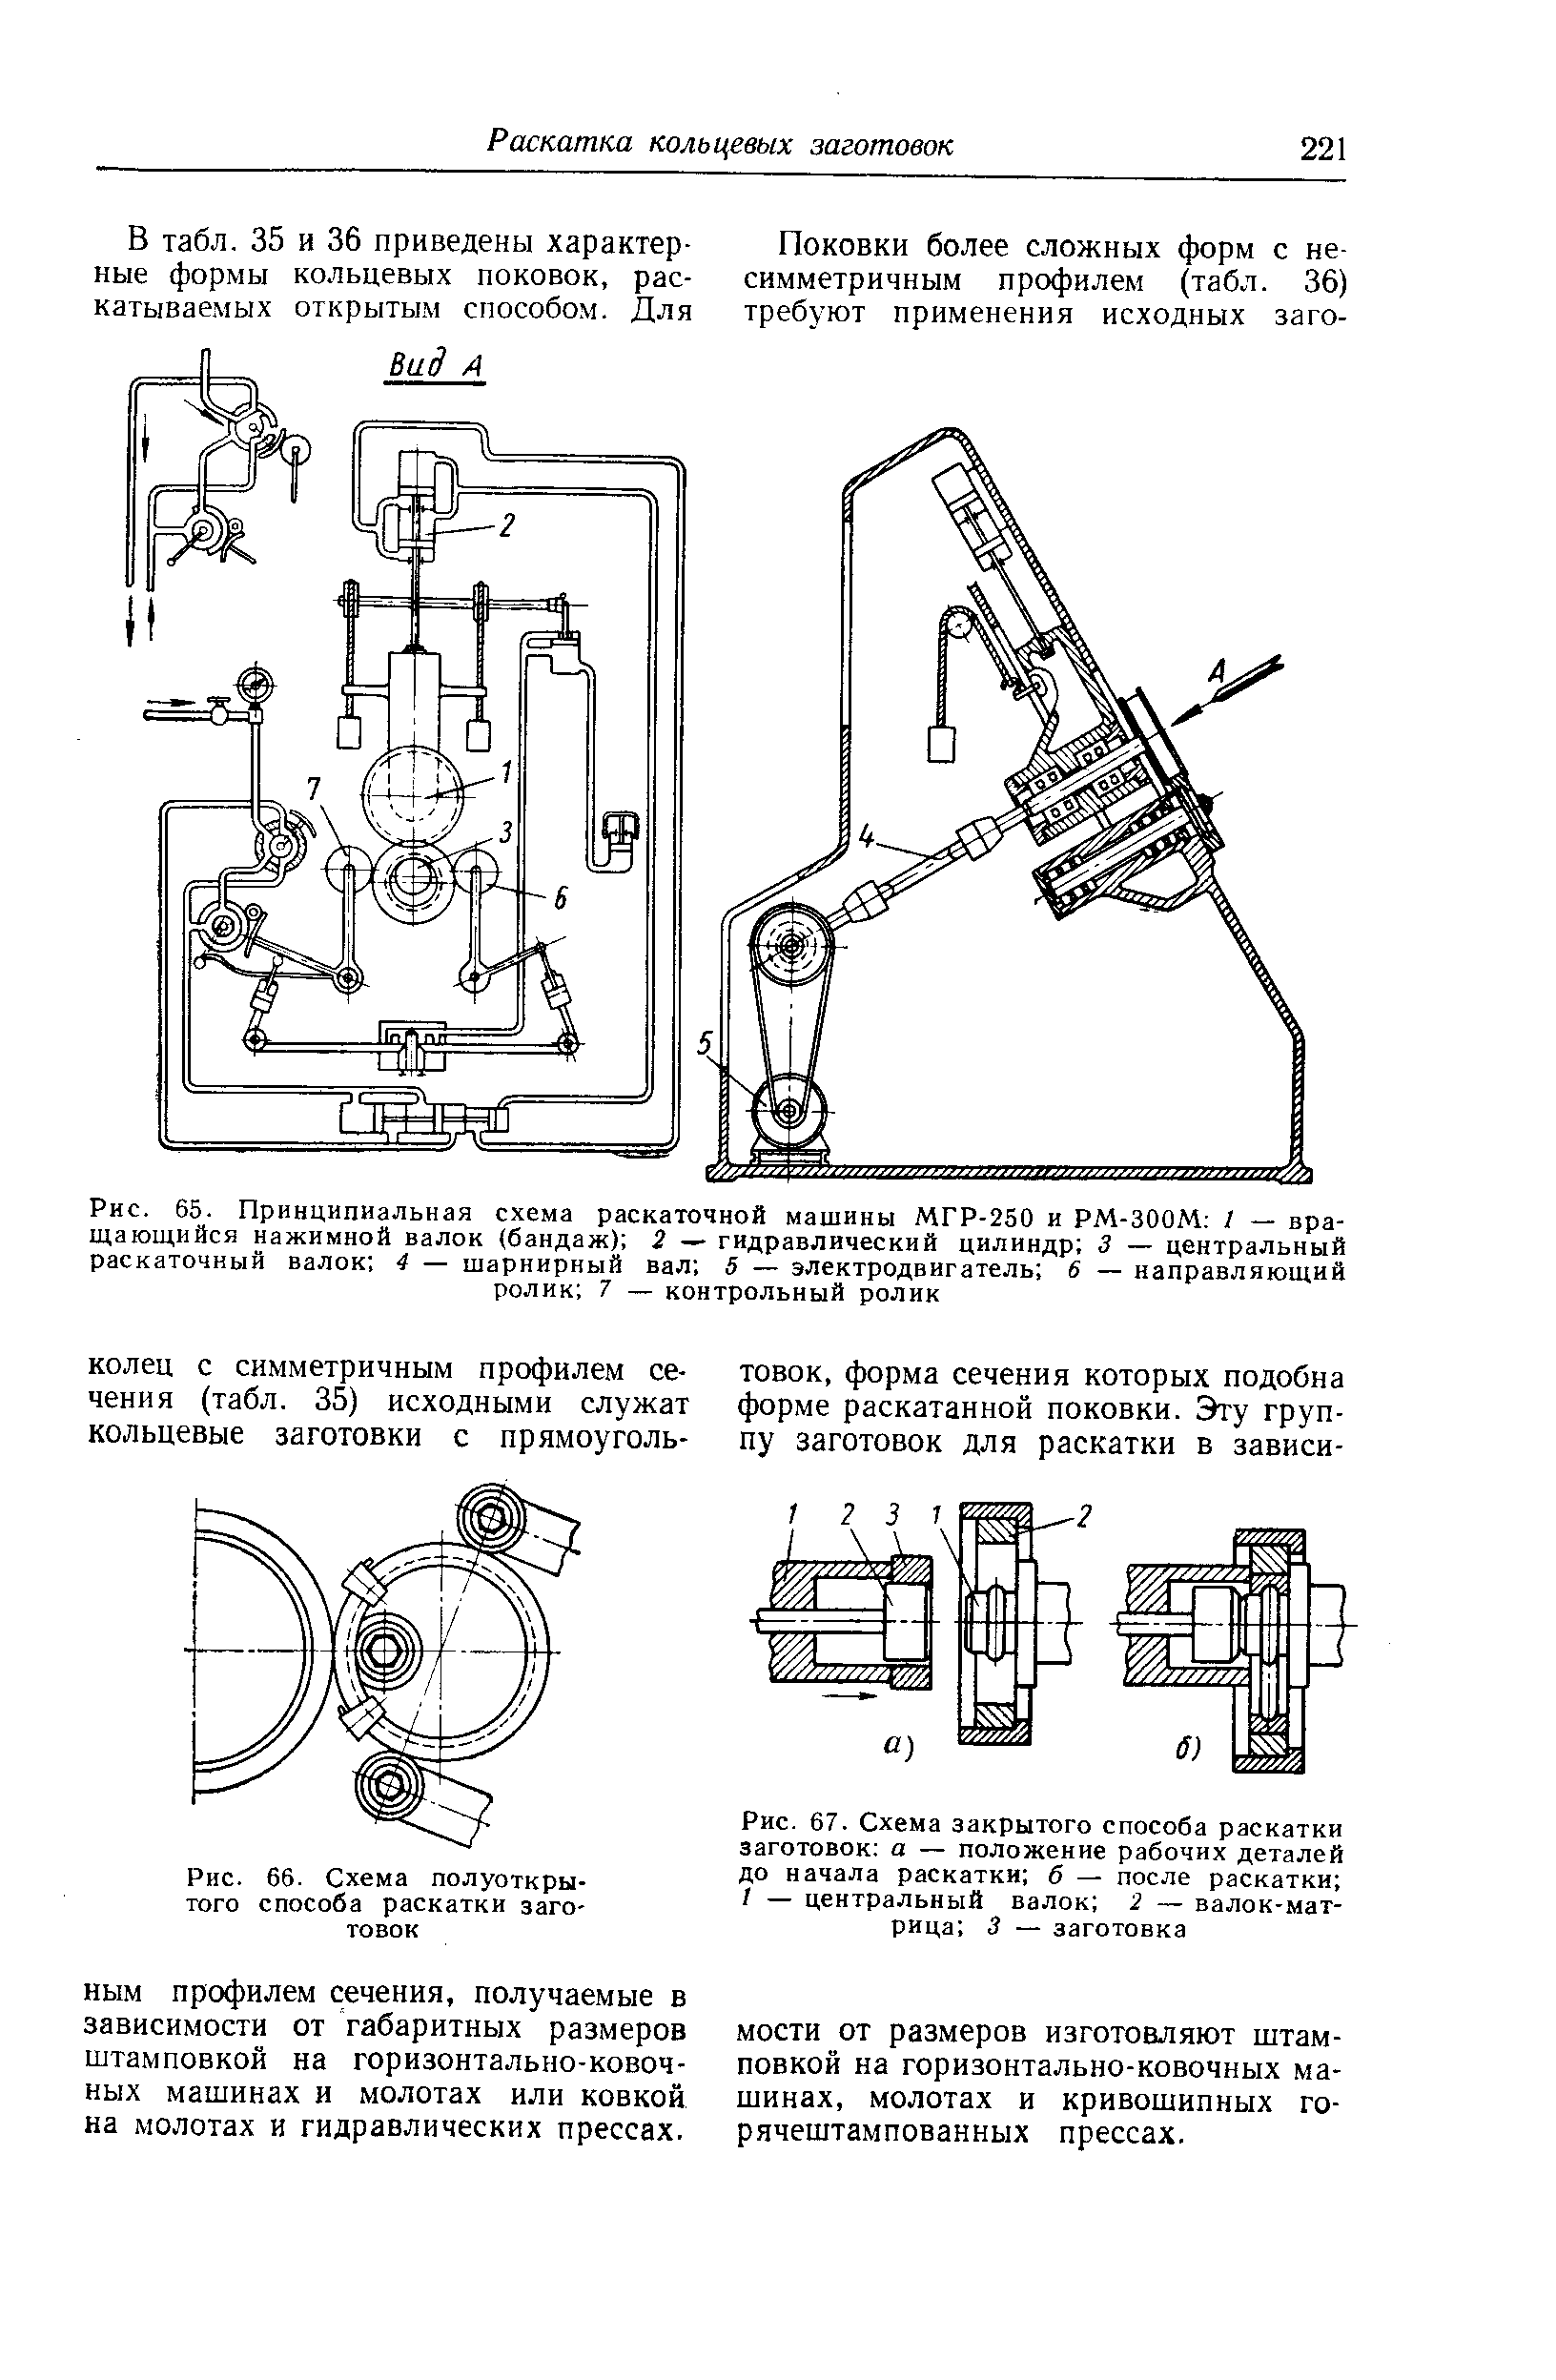 Рис. 66- Схема полуоткрытого способа раскатки заготовок
